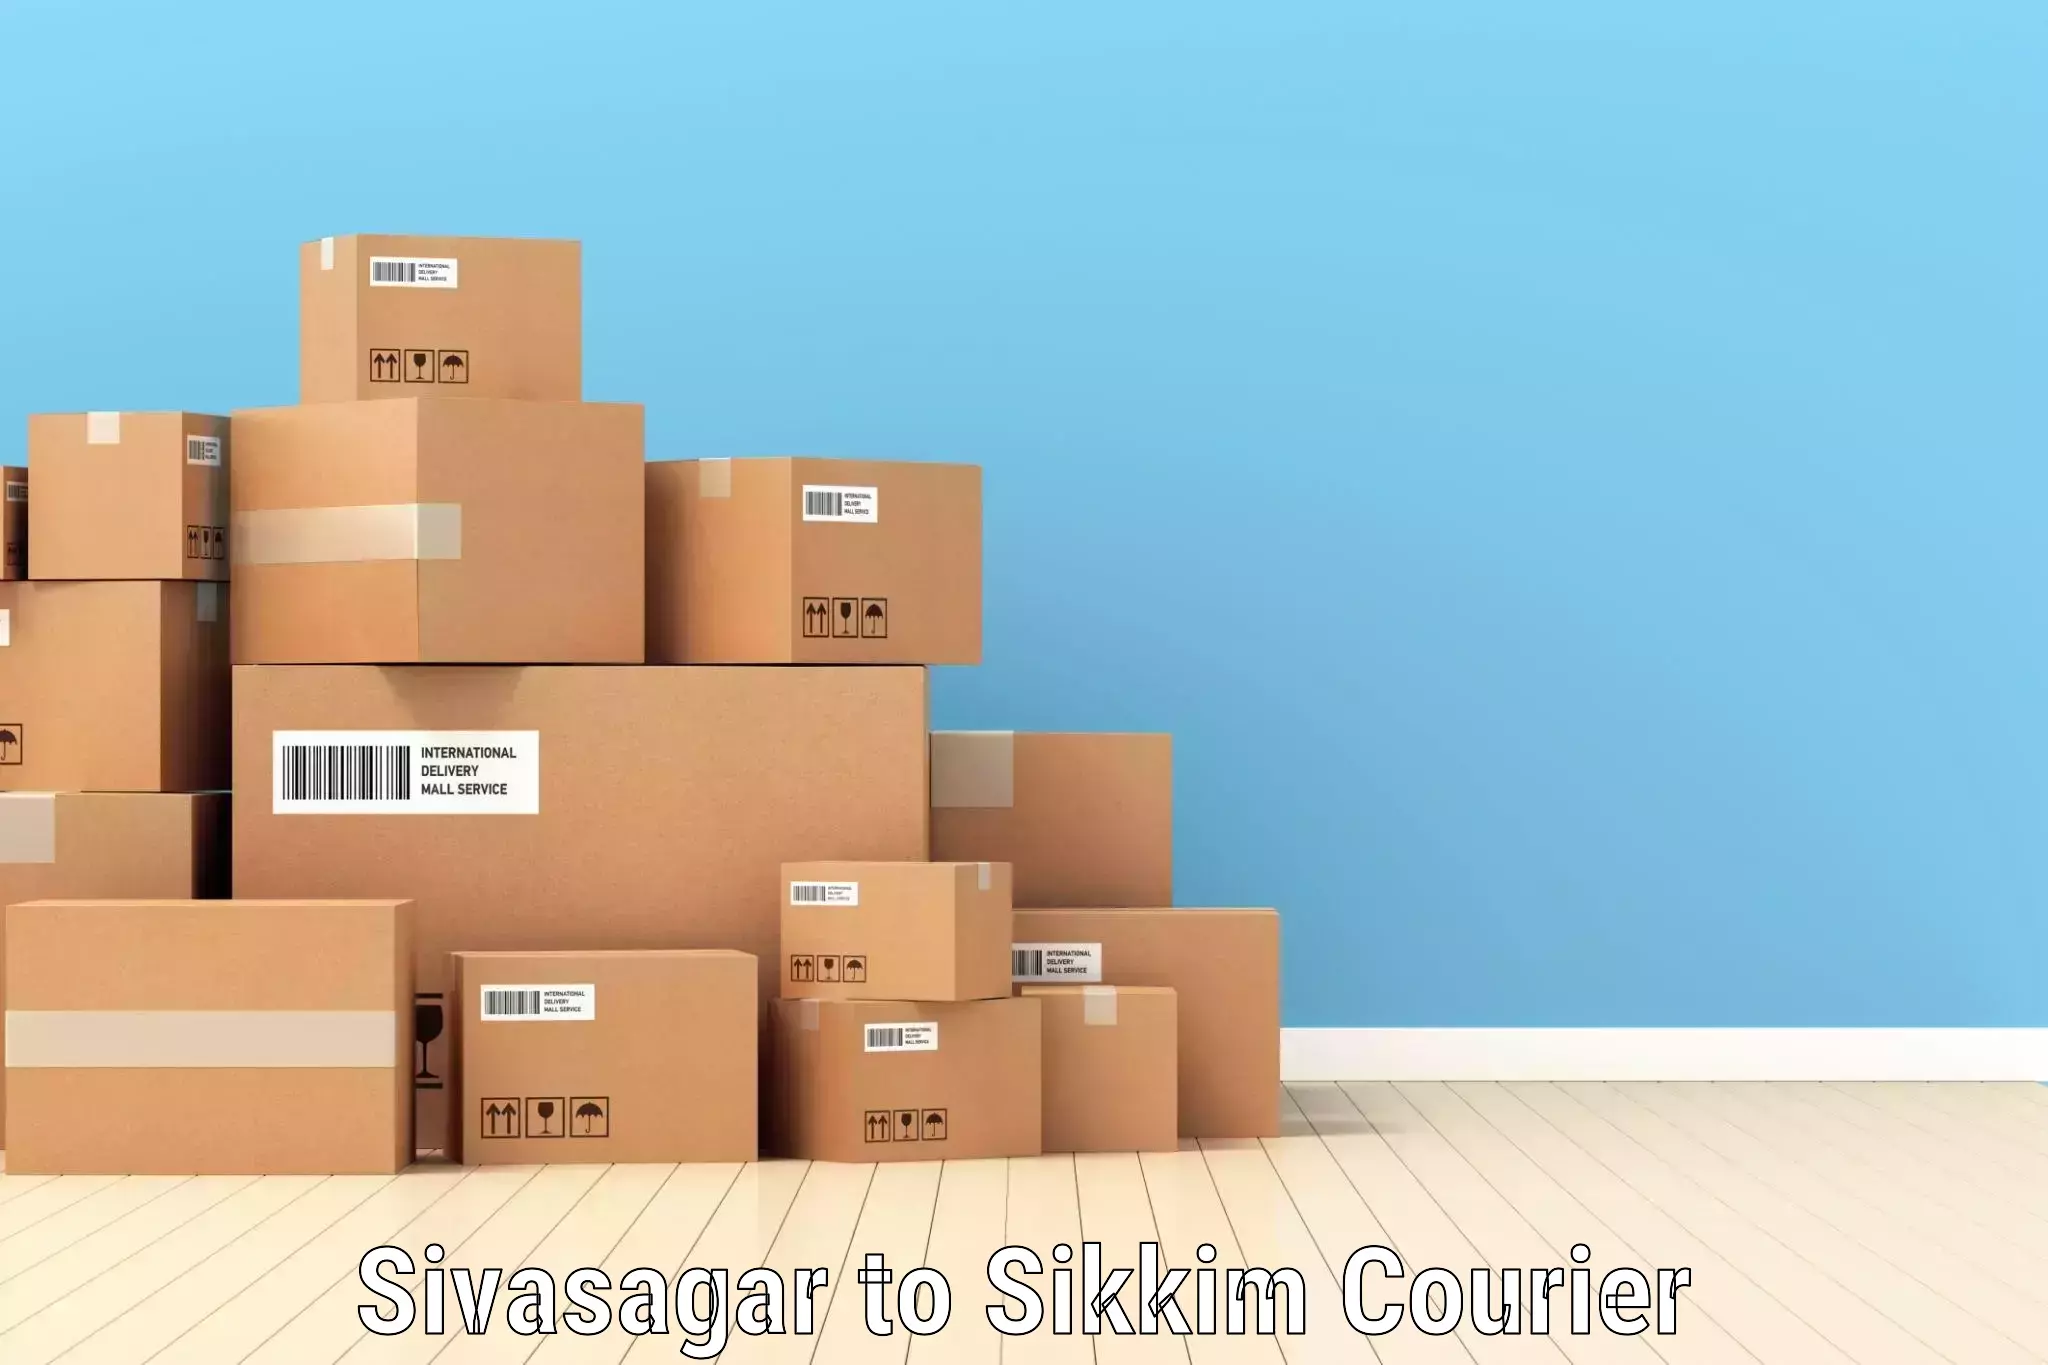 24/7 shipping services Sivasagar to Rongli